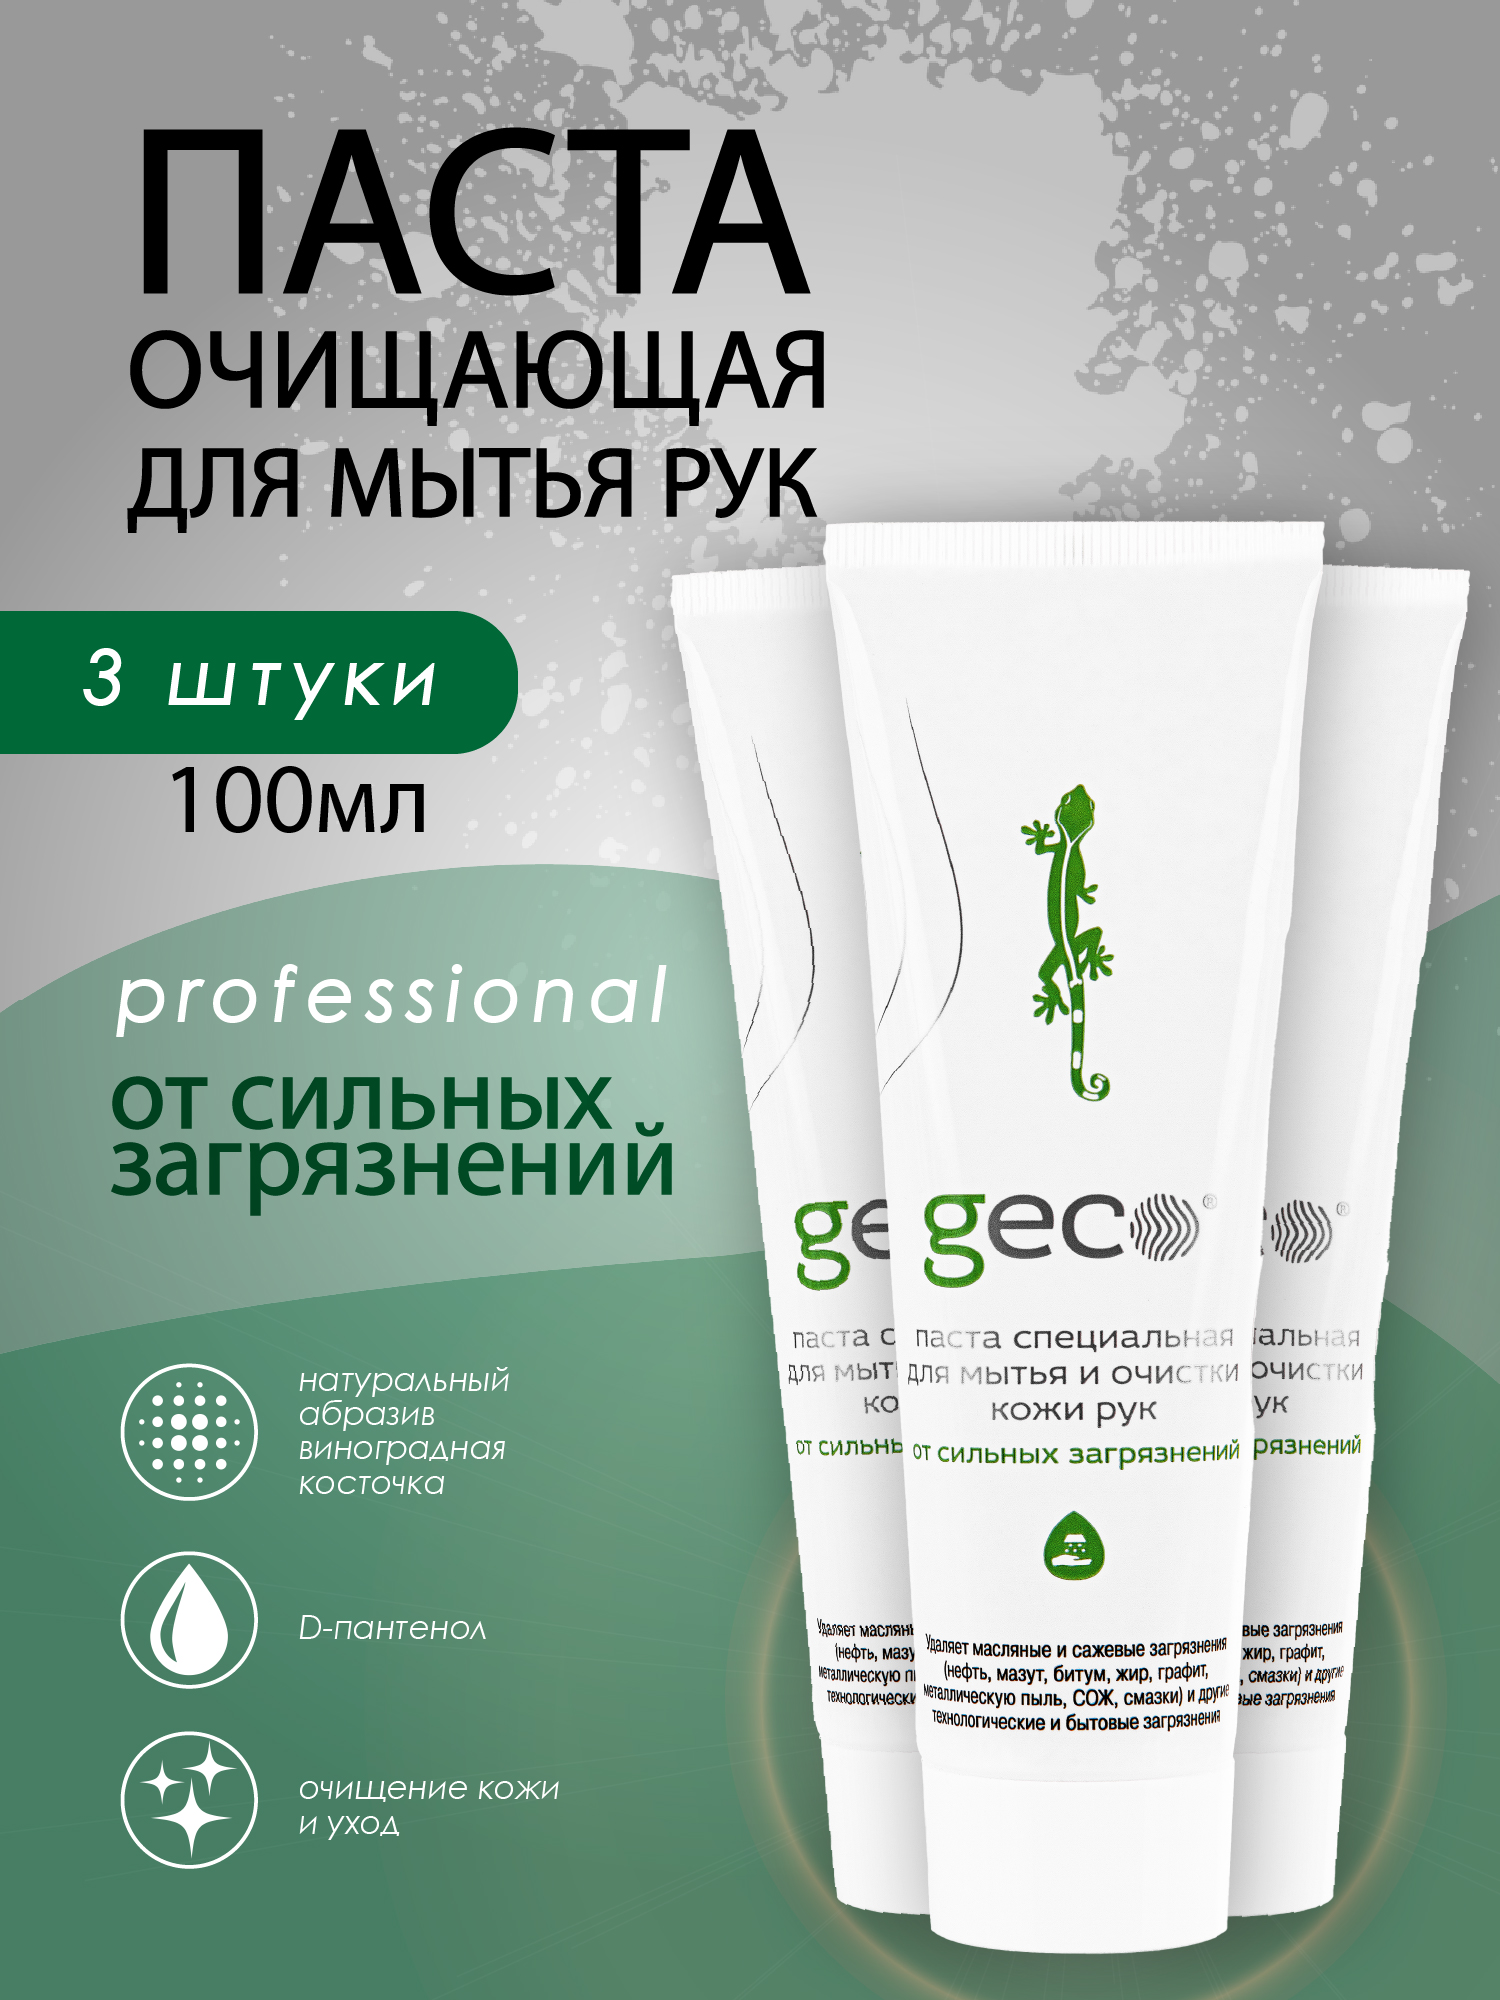 Паста GECO для мытья и очистки рук, от любых сильных загрязнений 3шт,100мл,крышка винт